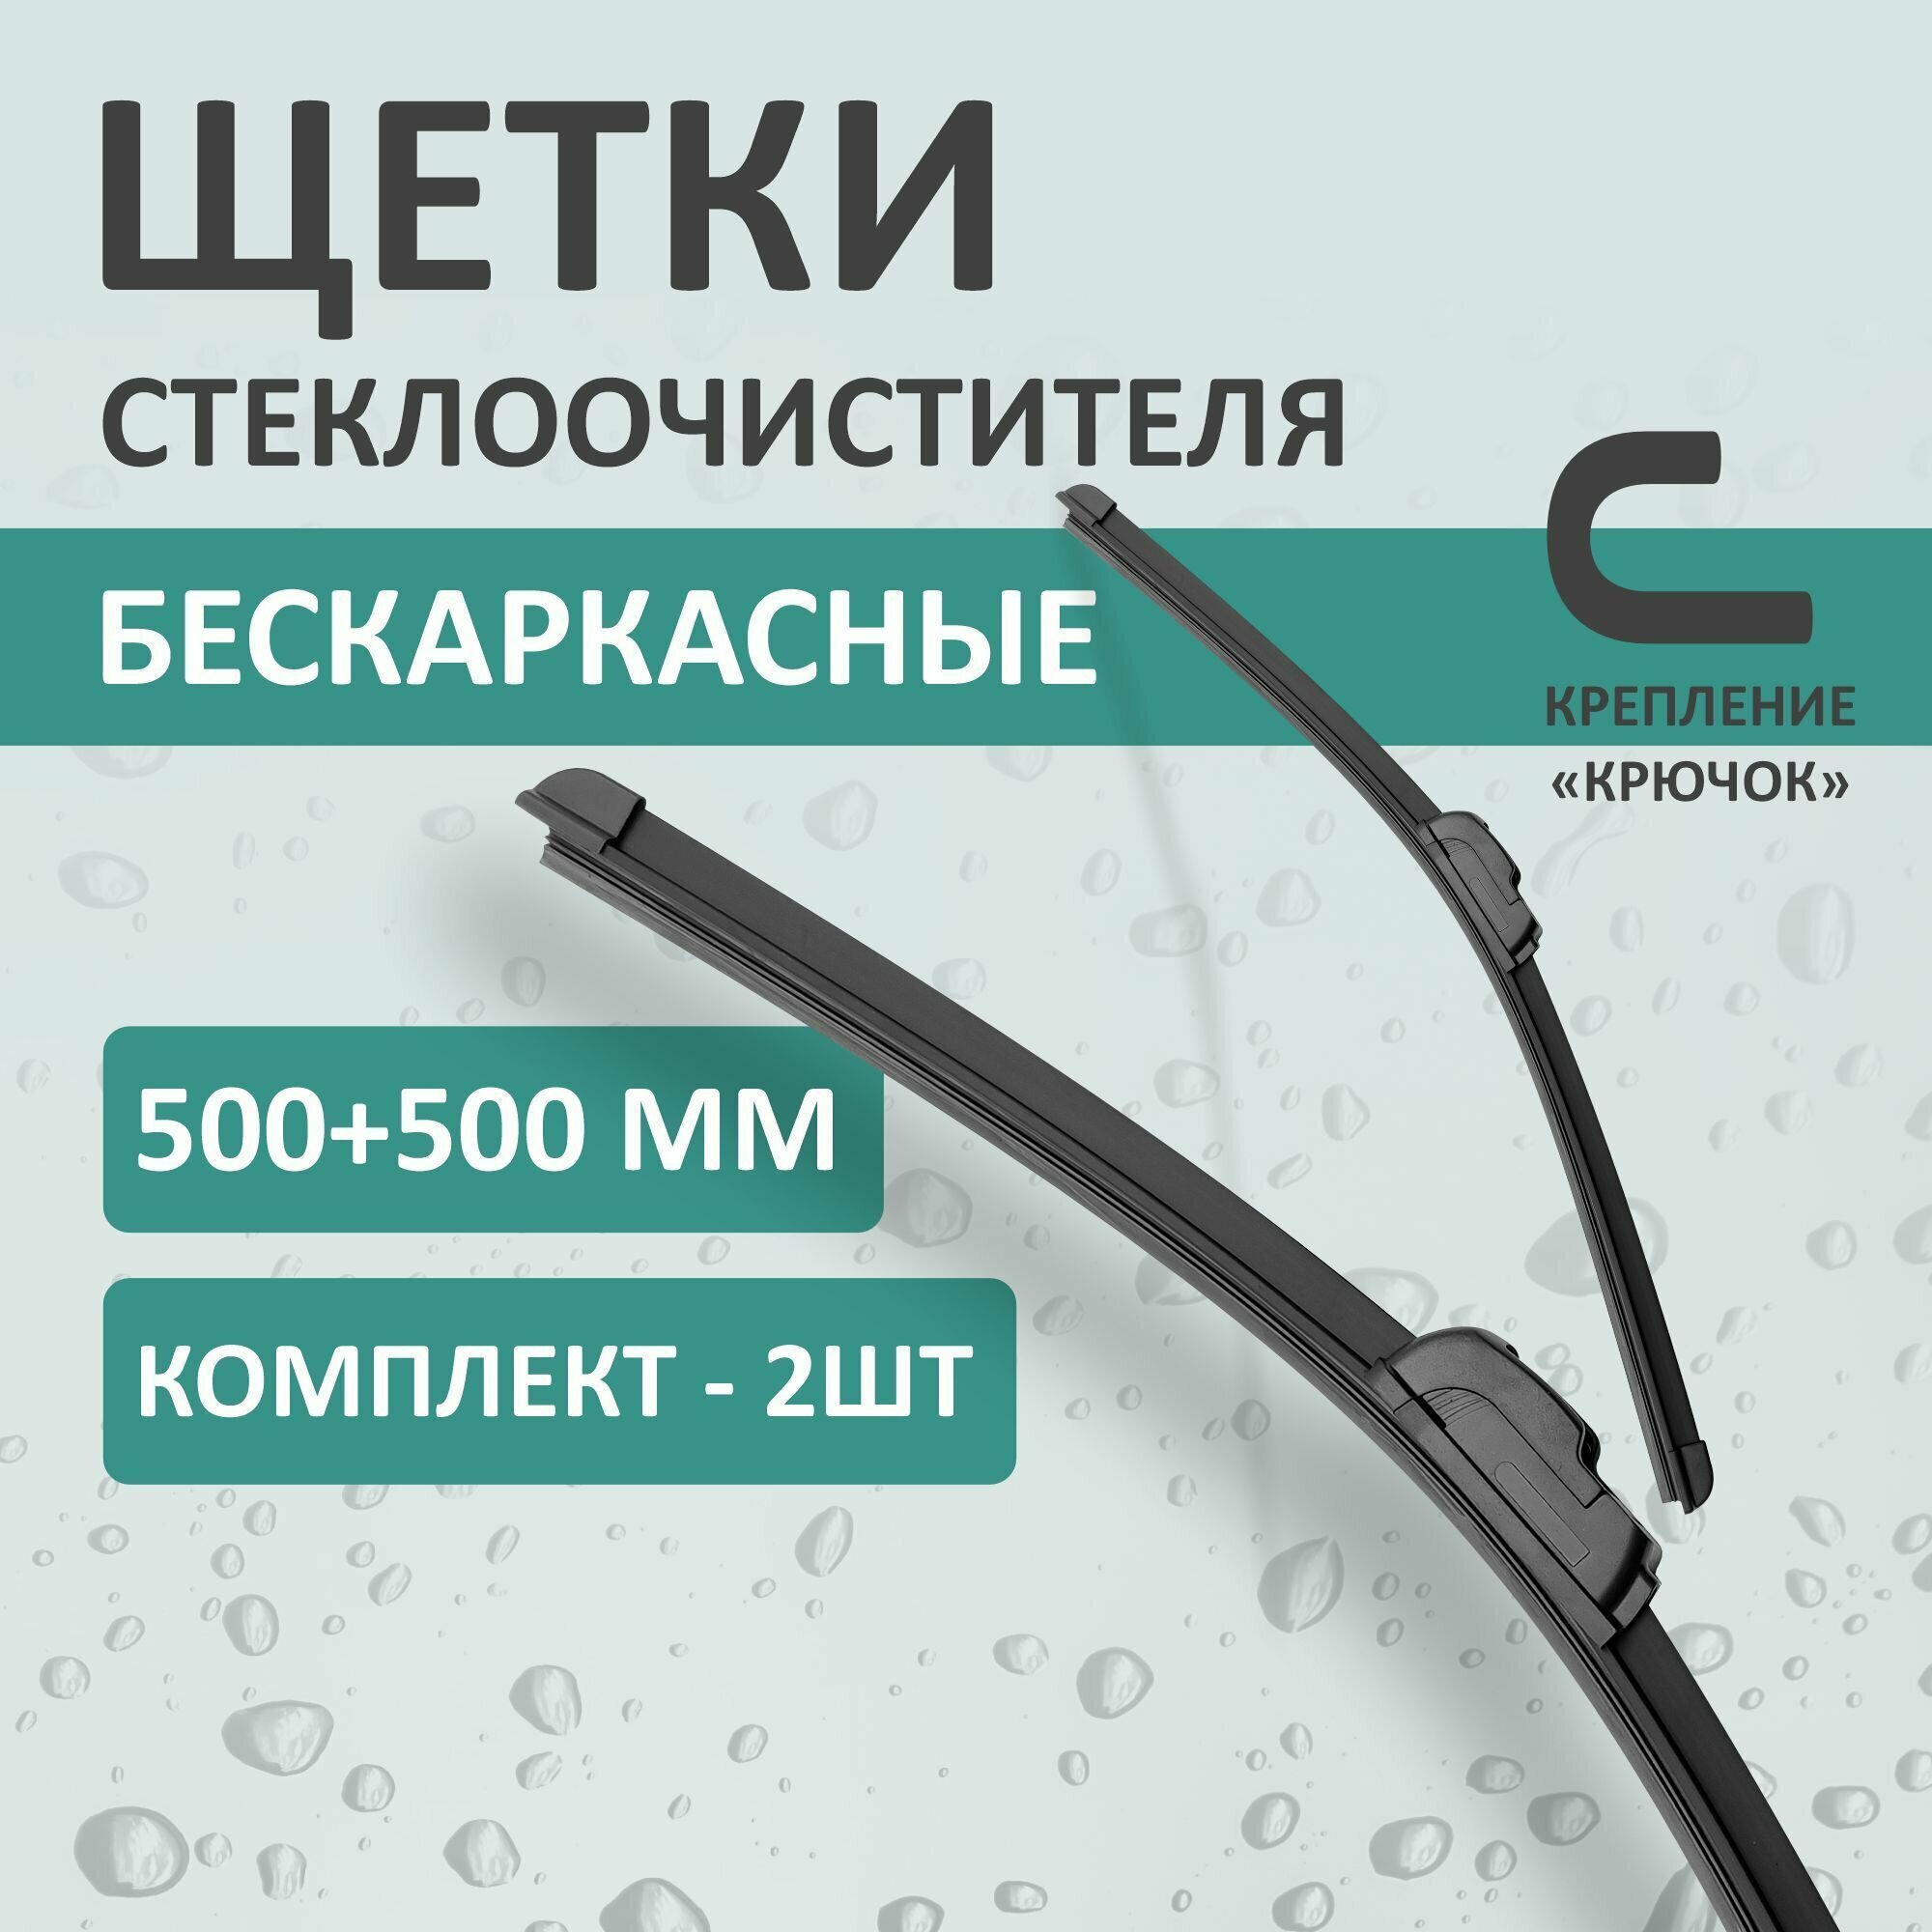 Бескаркасные щетки стеклоочистителя Kurumakit, 500 мм (20')/500 мм (20'), крепление крючок